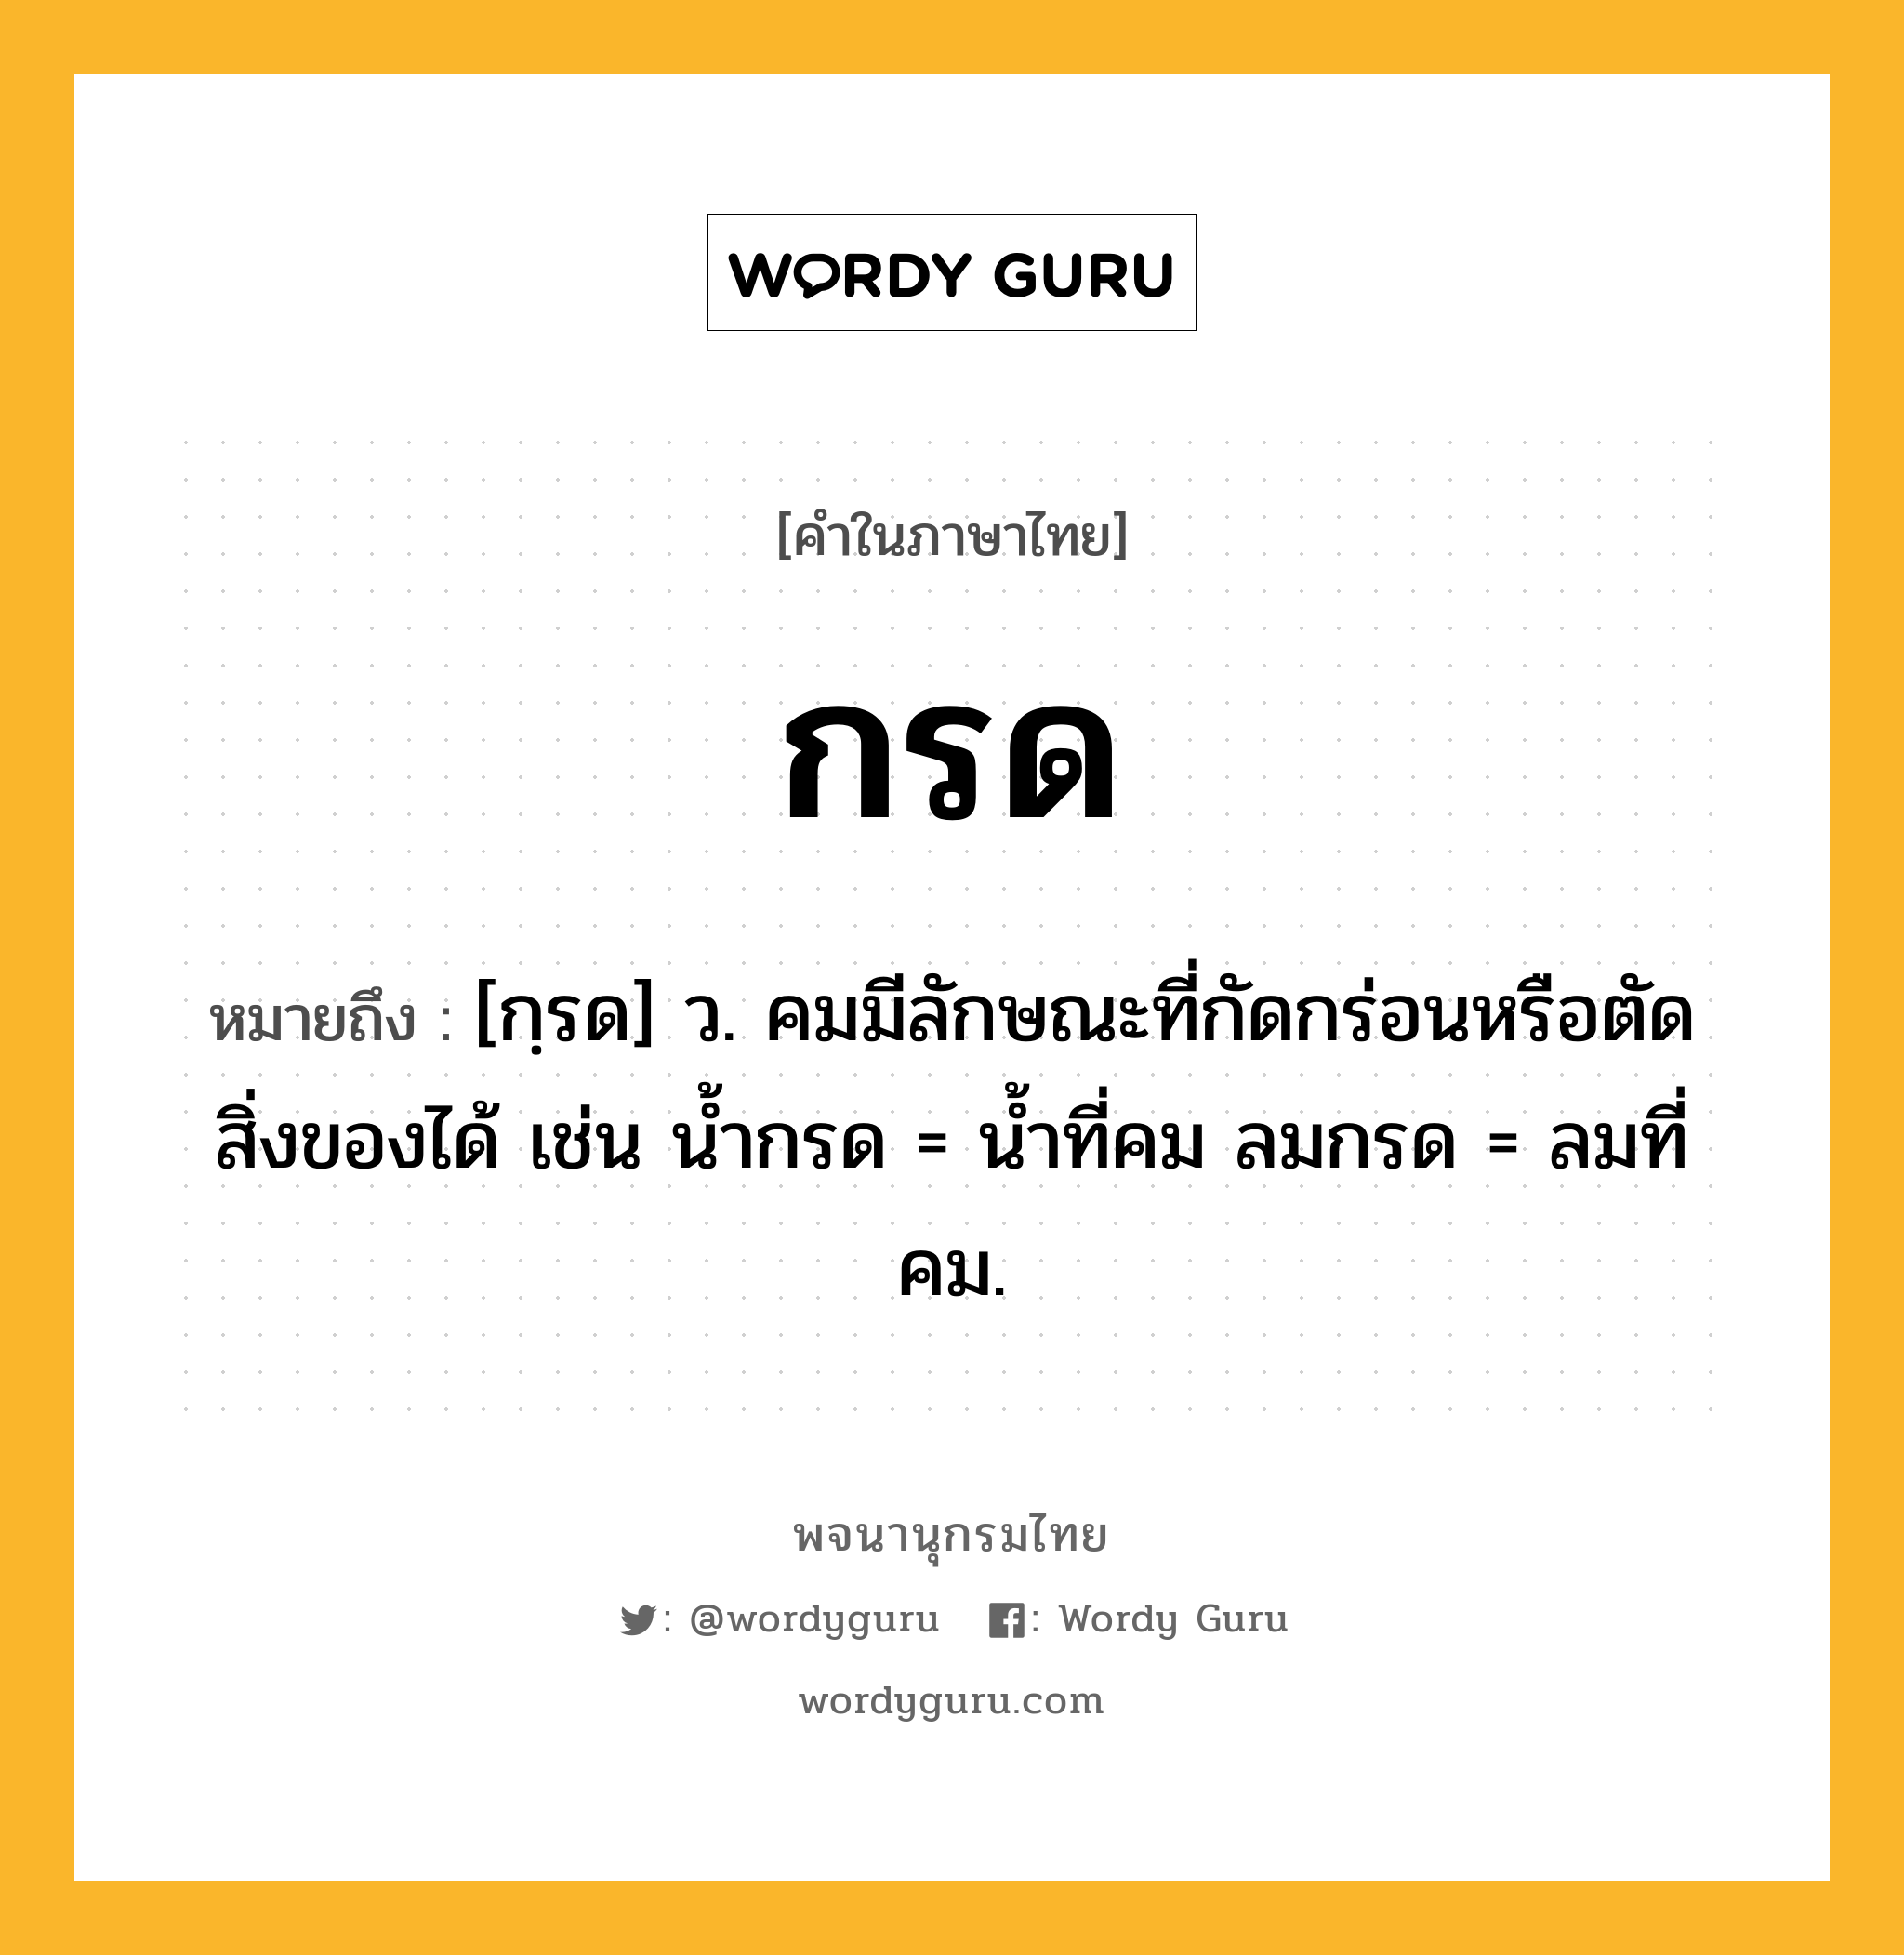 กรด หมายถึงอะไร?, คำในภาษาไทย กรด หมายถึง [กฺรด] ว. คมมีลักษณะที่กัดกร่อนหรือตัดสิ่งของได้ เช่น นํ้ากรด = นํ้าที่คม ลมกรด = ลมที่คม.